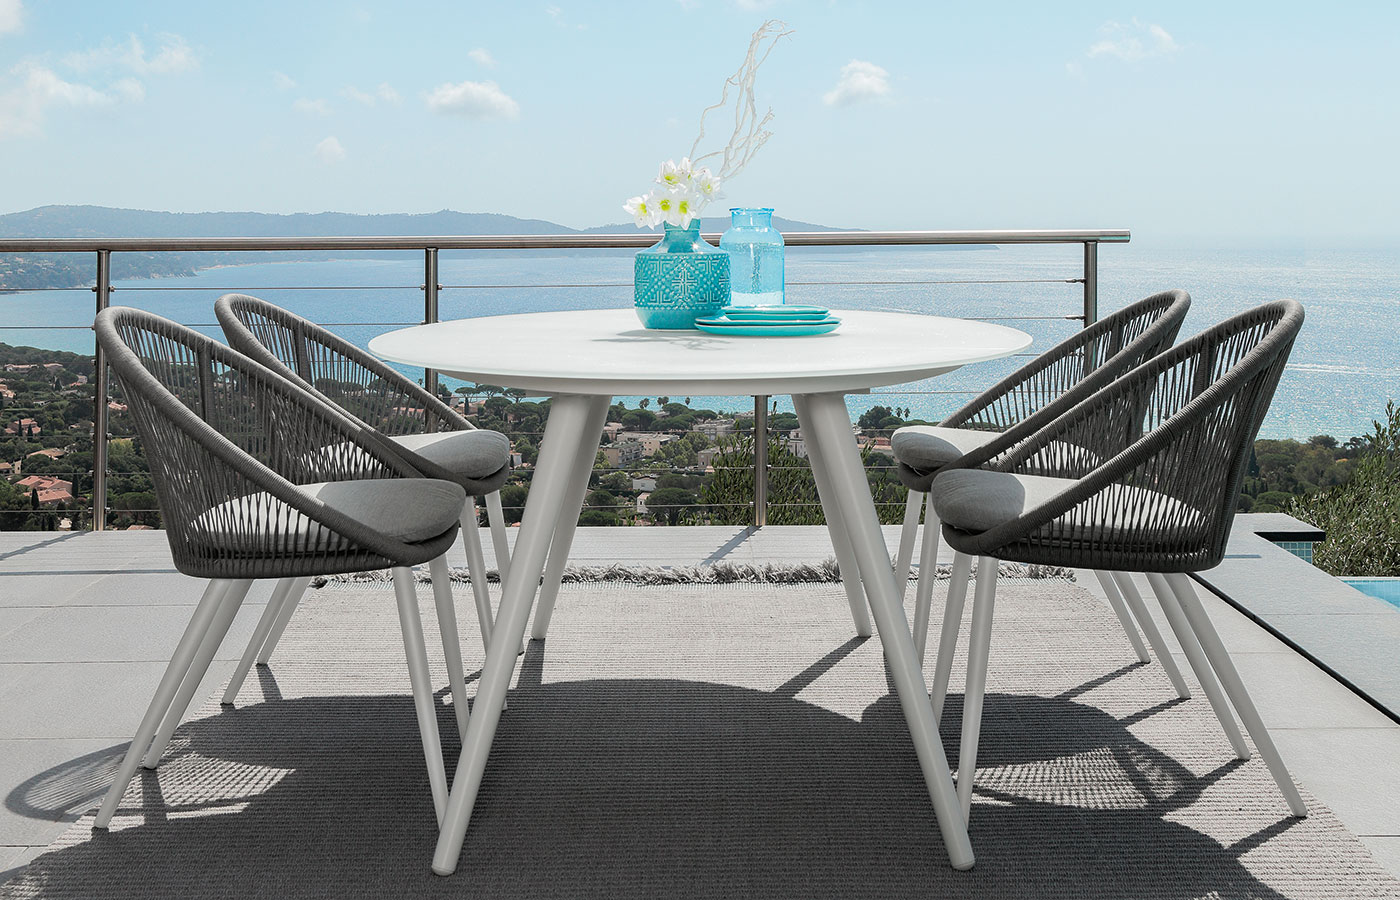 Table de jardin ovale avec structure en aluminium blanc, plan en verre sérigraphié. Achetez en ligne nos meubles de jardin de luxe avec livraison gratuite.